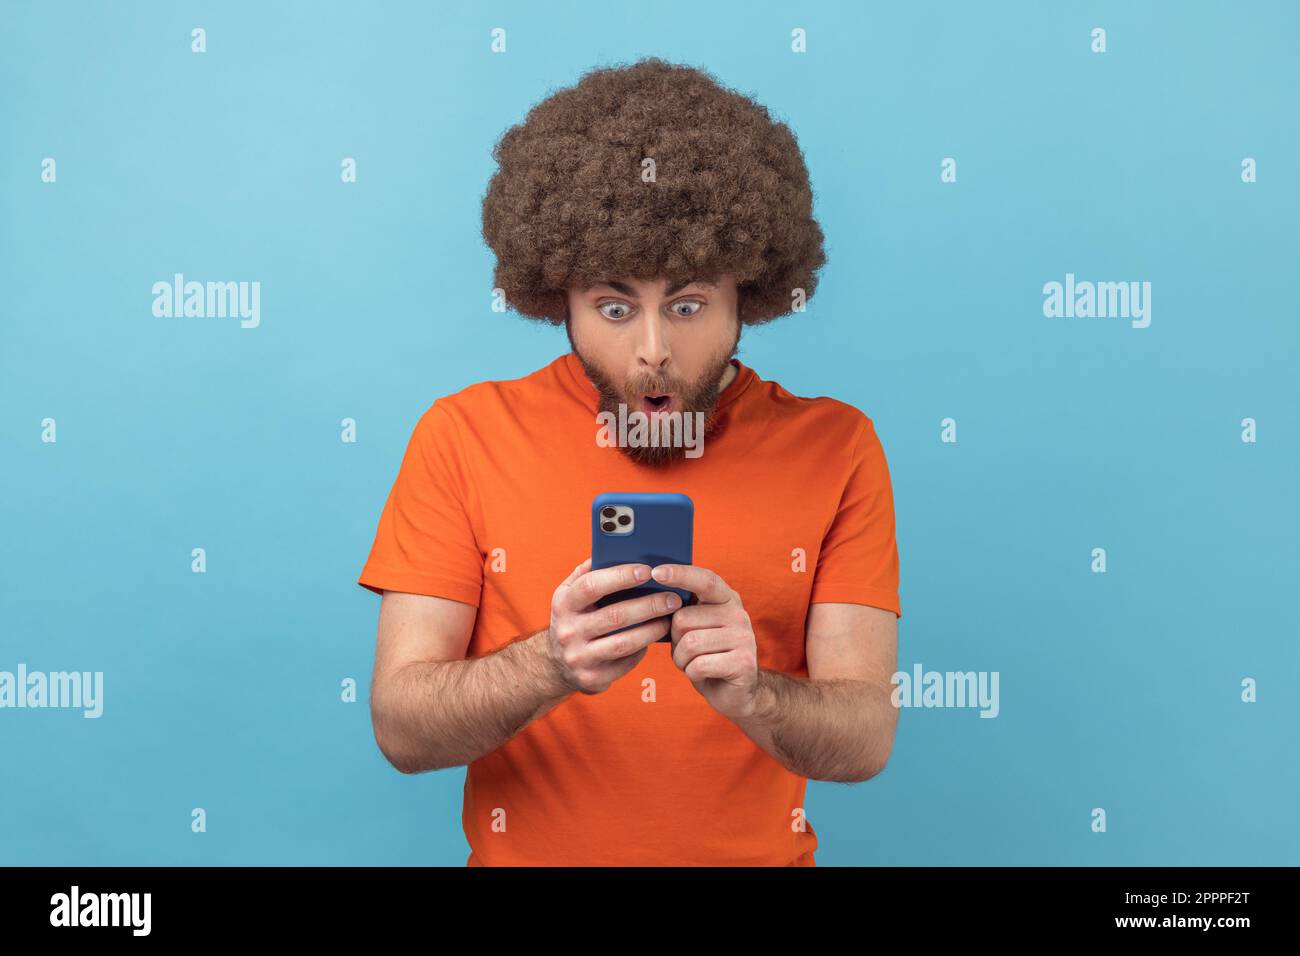 Porträt eines erstaunten Mannes mit Afro-Frisur, der ein orangefarbenes T-Shirt trägt, einen Post in einem sozialen Netzwerk mit Handy liest, und sich überrascht auswirkt. Innenstudio, isoliert auf blauem Hintergrund. Stockfoto